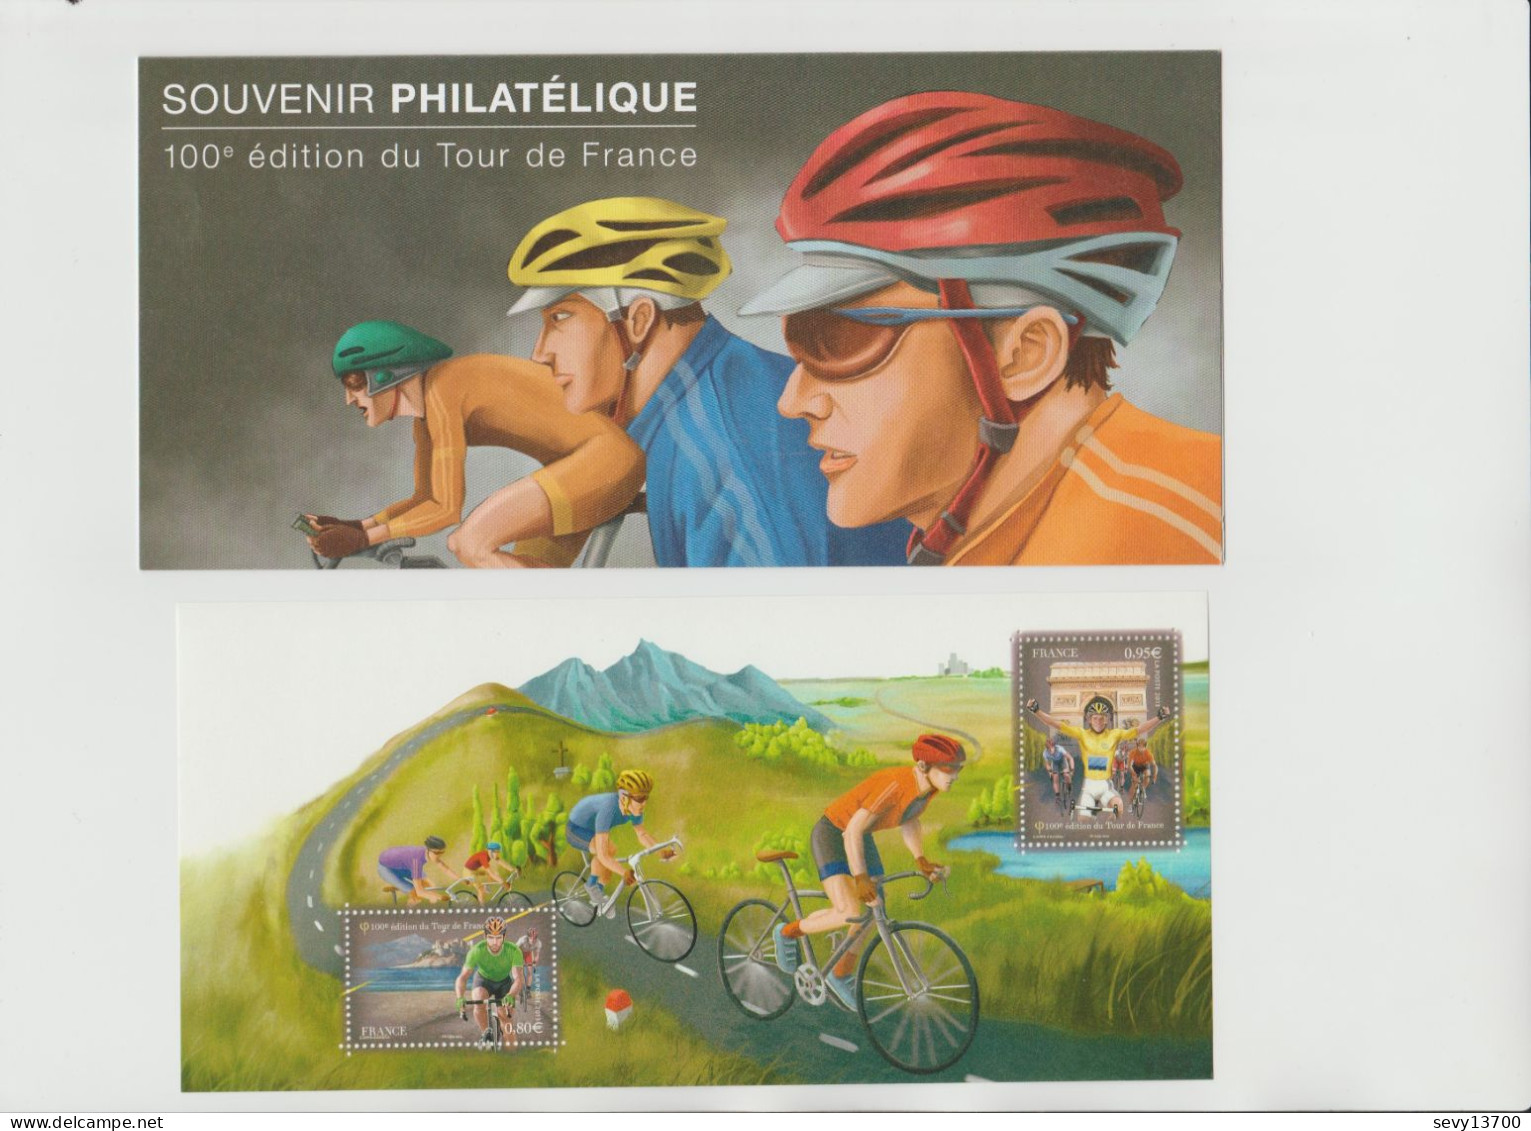 France 2013 Souvenir Philatélique Yvert Tellier N° 81 100ème Edition Du Tour De France - Blocs Souvenir